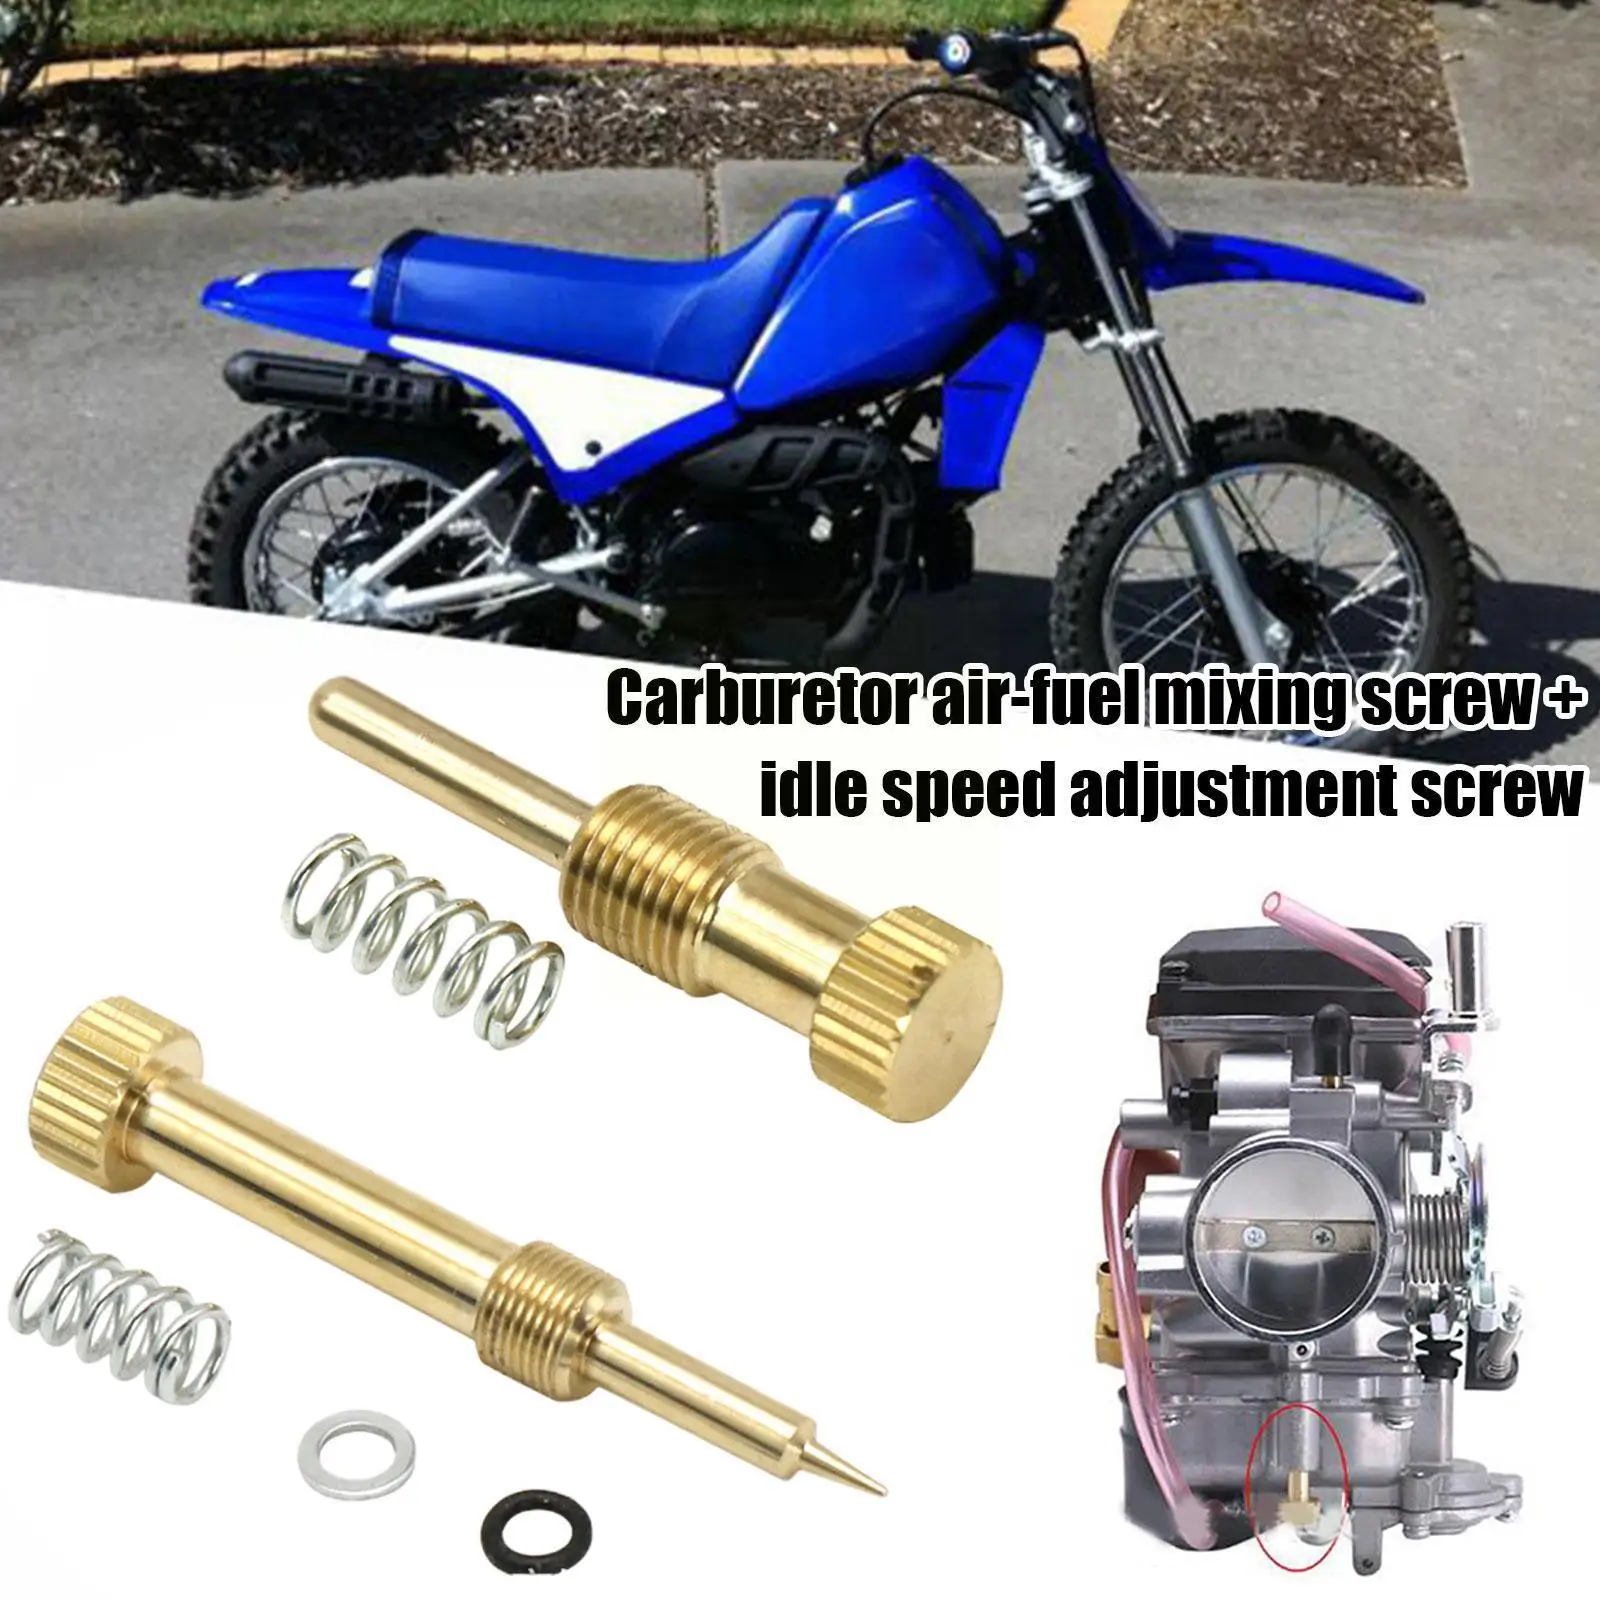 

Carburetor Idle Speed Adjusting Screw Air Mixing Screw For Mikuni Vm22 Carb Ybr 125 Atv Motorcycle Carb N9j1